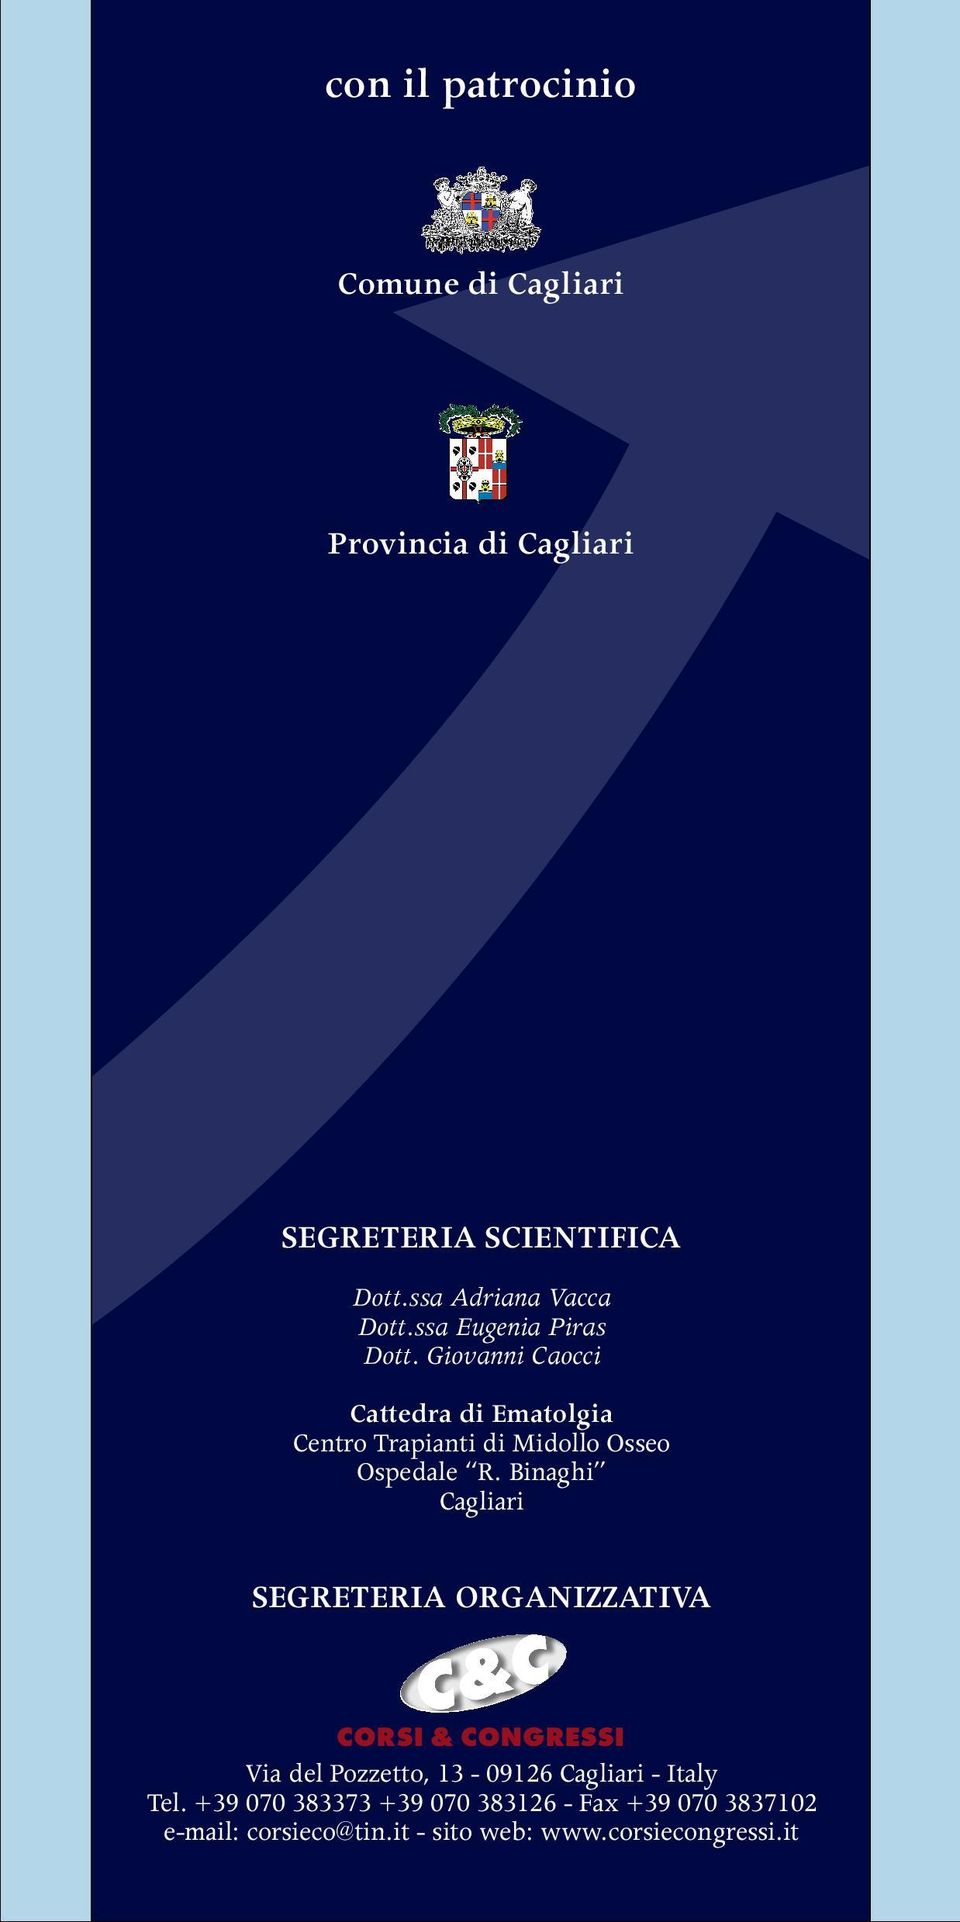 Binaghi Cagliari SEGRETERIA ORGANIZZATIVA CORSI & CONGRESSI Via del Pozzetto, 13-09126 Cagliari - Italy Tel.